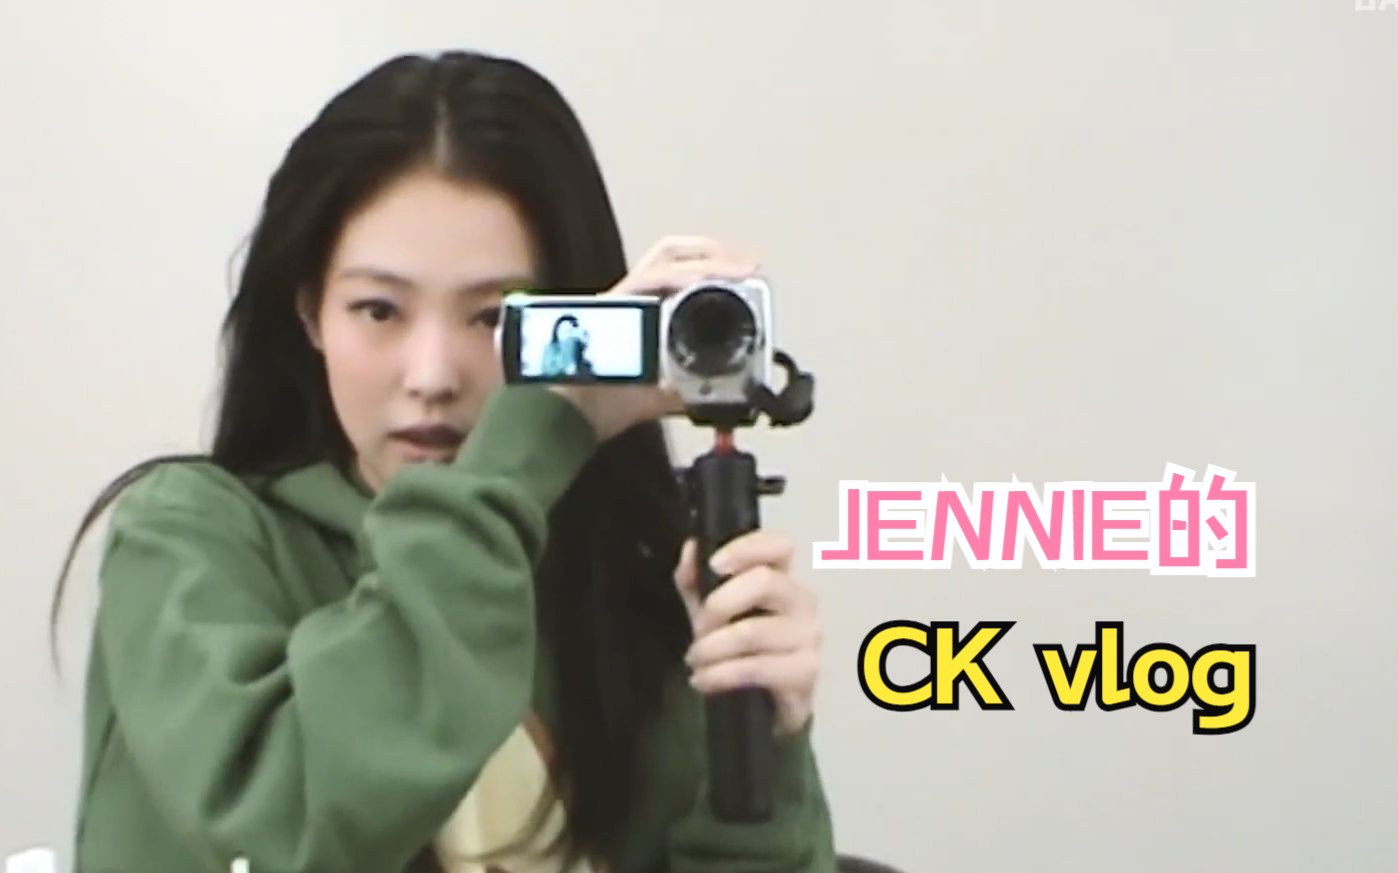 【中字】Jennie的“Calvin Klein vlog”| 妮的CK vlog